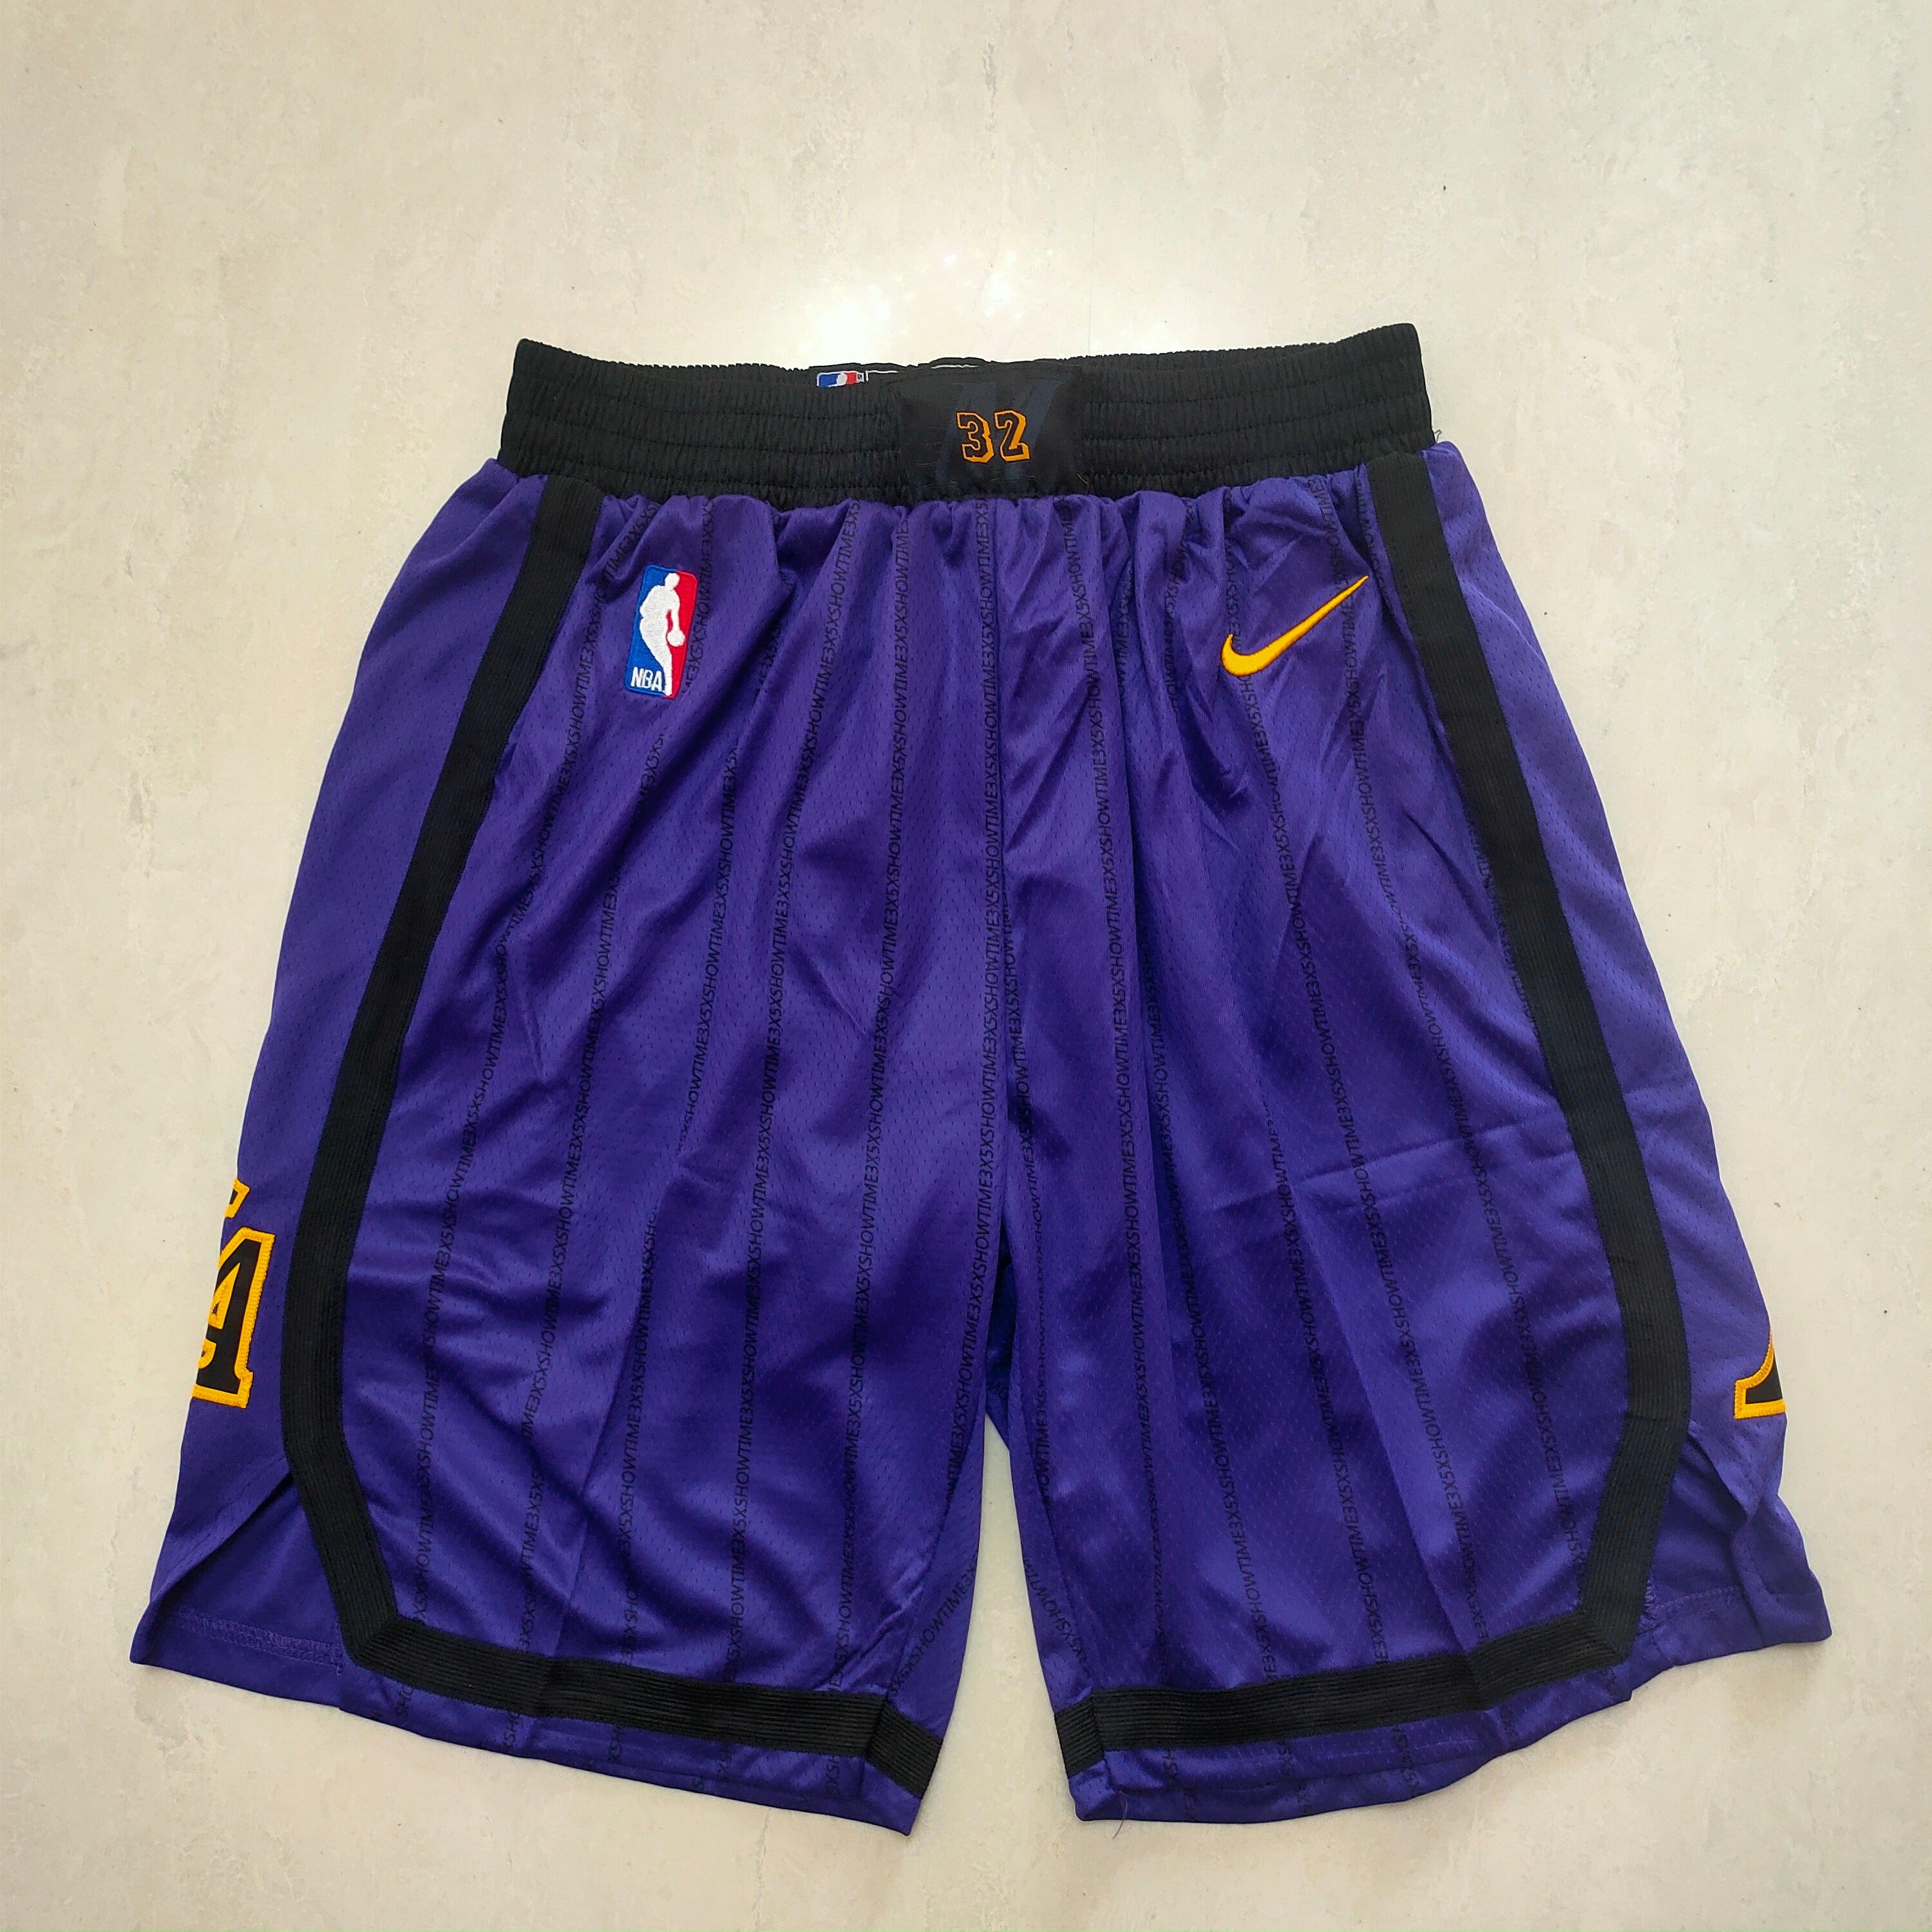 Lakers purple shorts